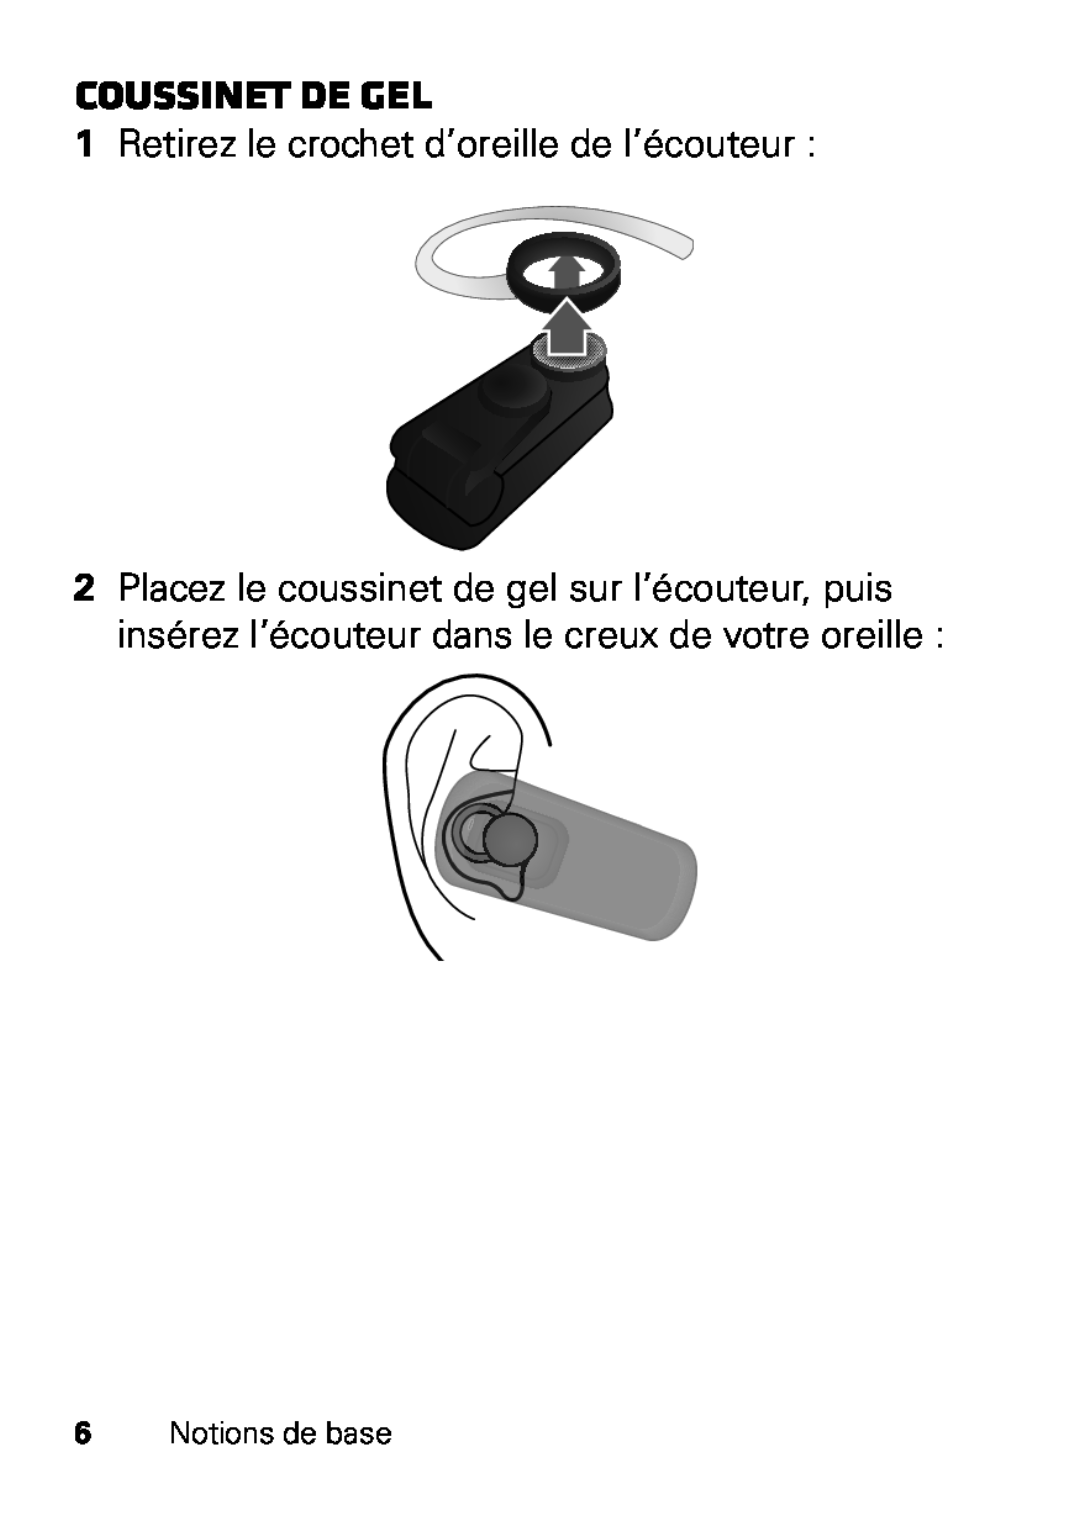 Motorola HX550 manual Coussinet de gel, 1Retirez le crochet d’oreille de l’écouteur 